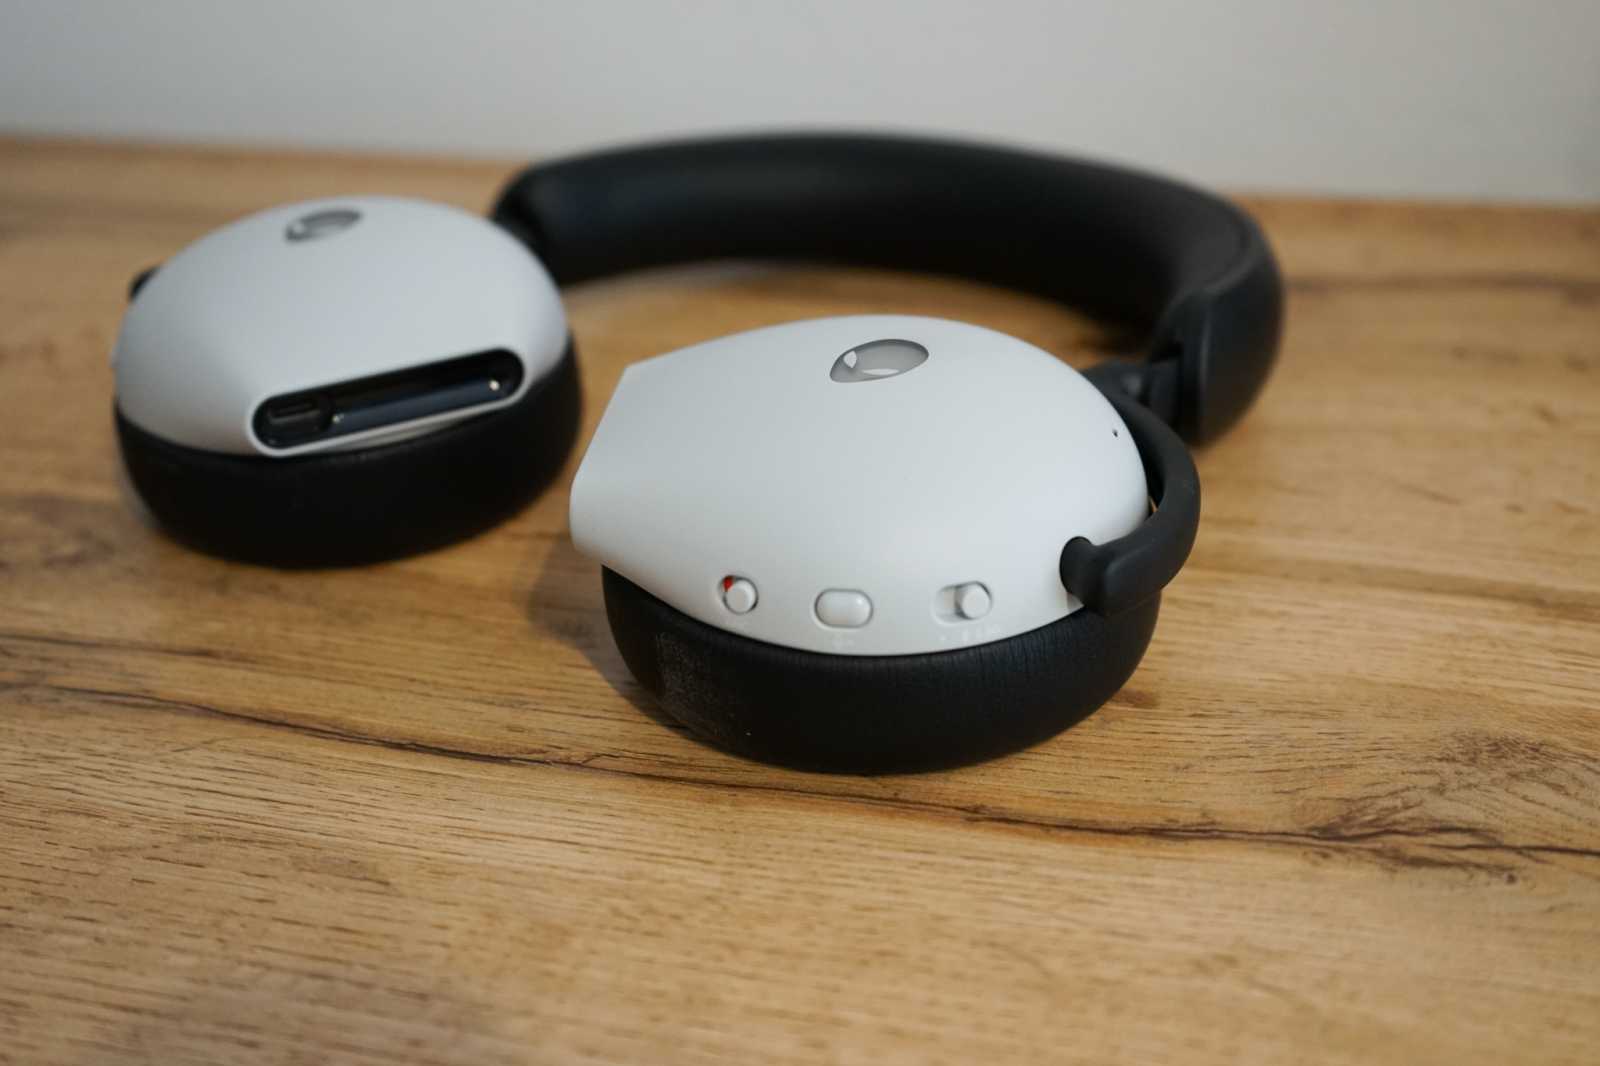 Test sluchátek Alienware AW920H, headset s trojím připojením a aktivním potlačením hluku